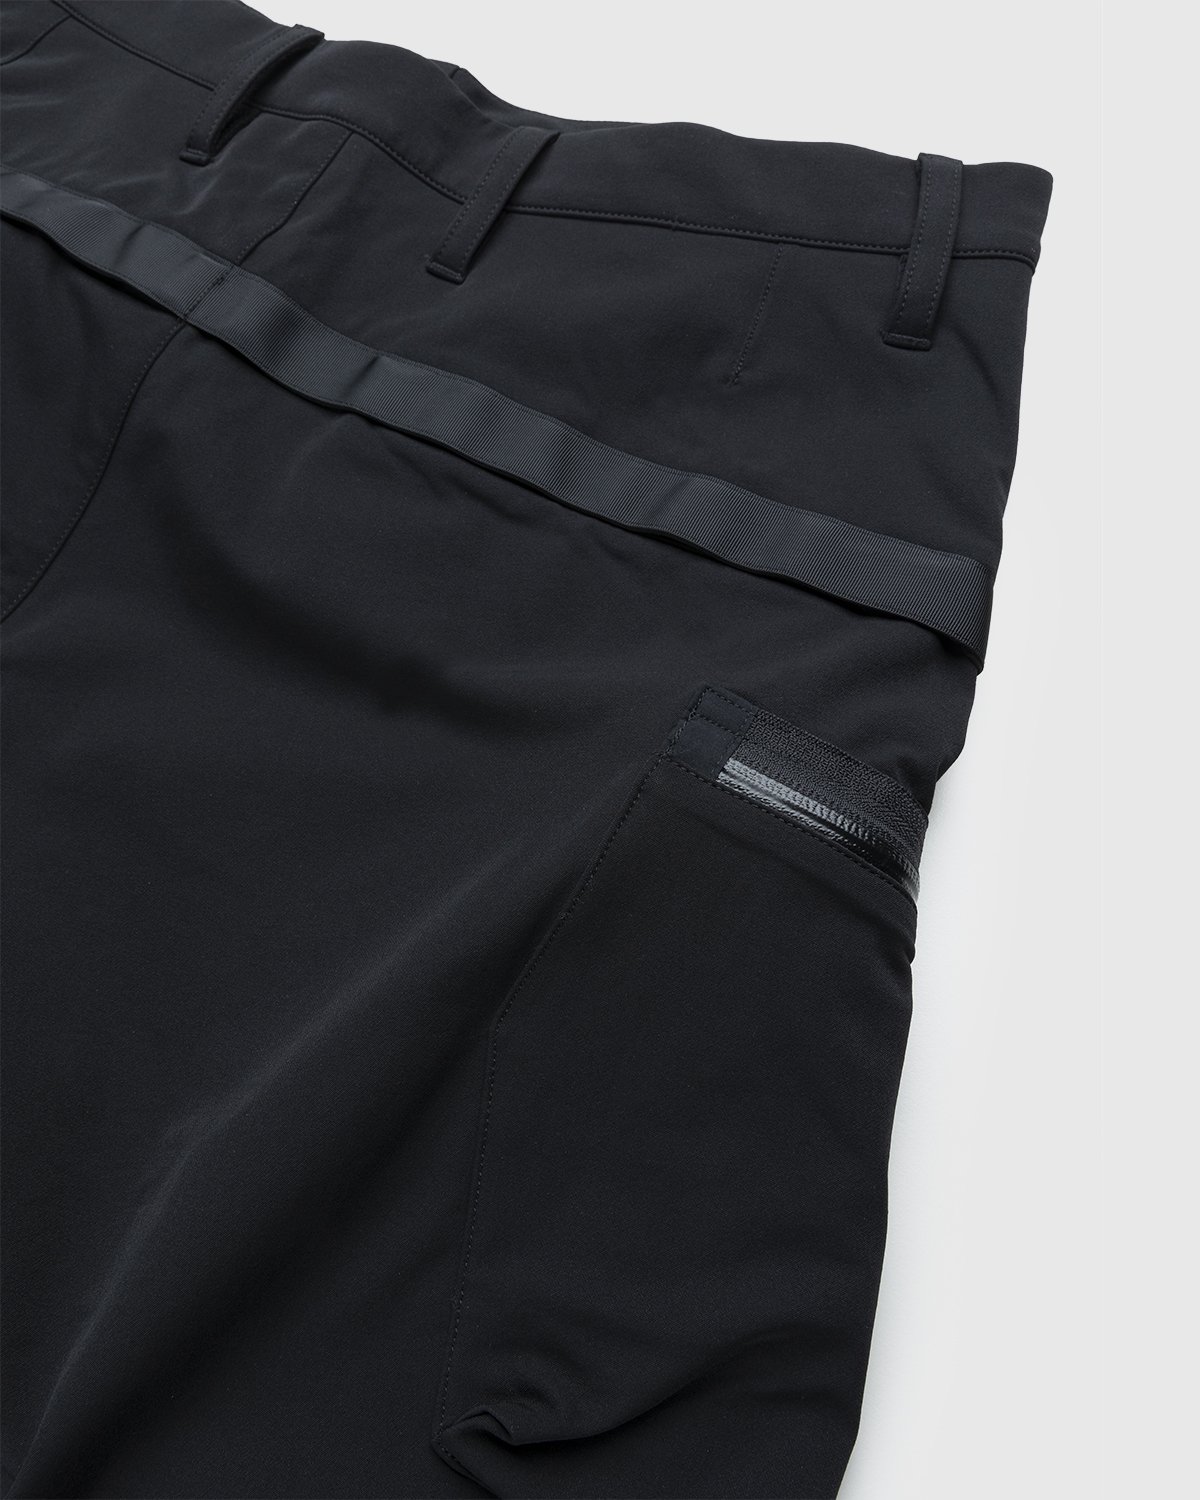 ACRONYM - P41-DS Pant Black - Clothing - Black - Image 4